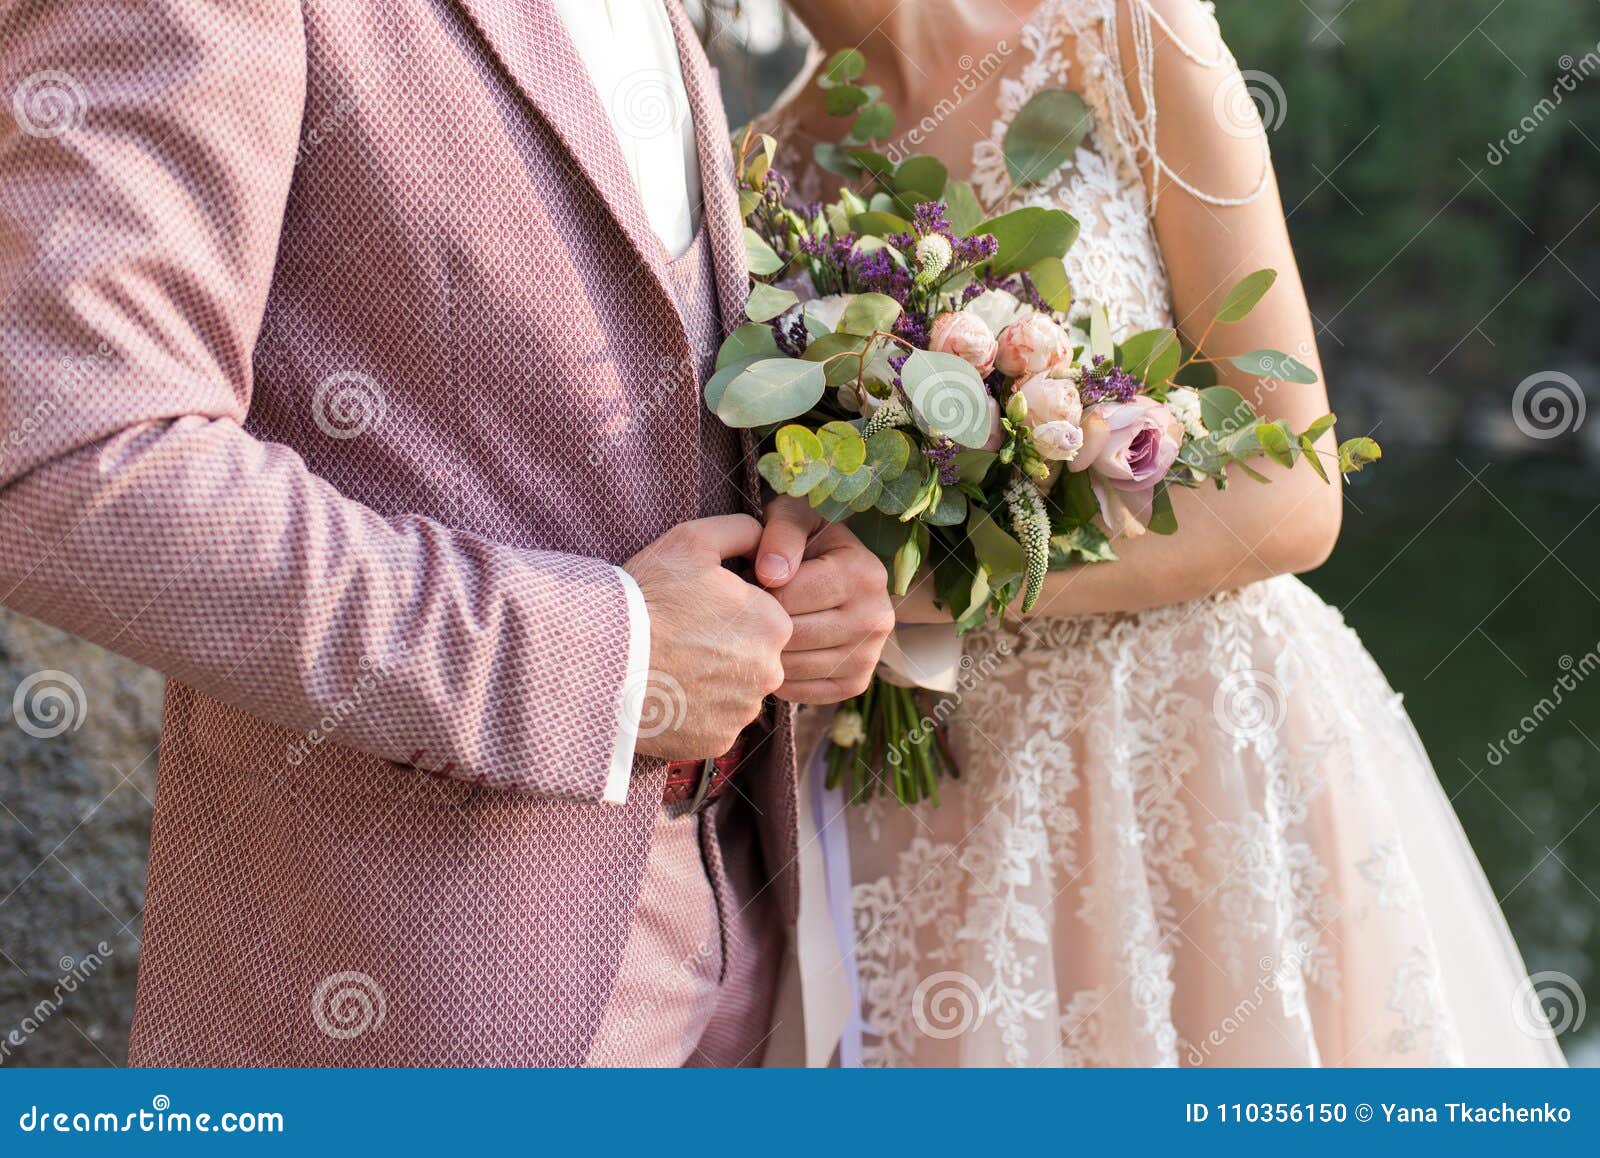 Hochzeit Das Madchen In Einem Beige Kleid Und Ein Kerl In Einem Anzug Halten Einen Schonen Blumenstrauss Von Weissen Purpurroten Stockfoto Bild Von Halten Schonen